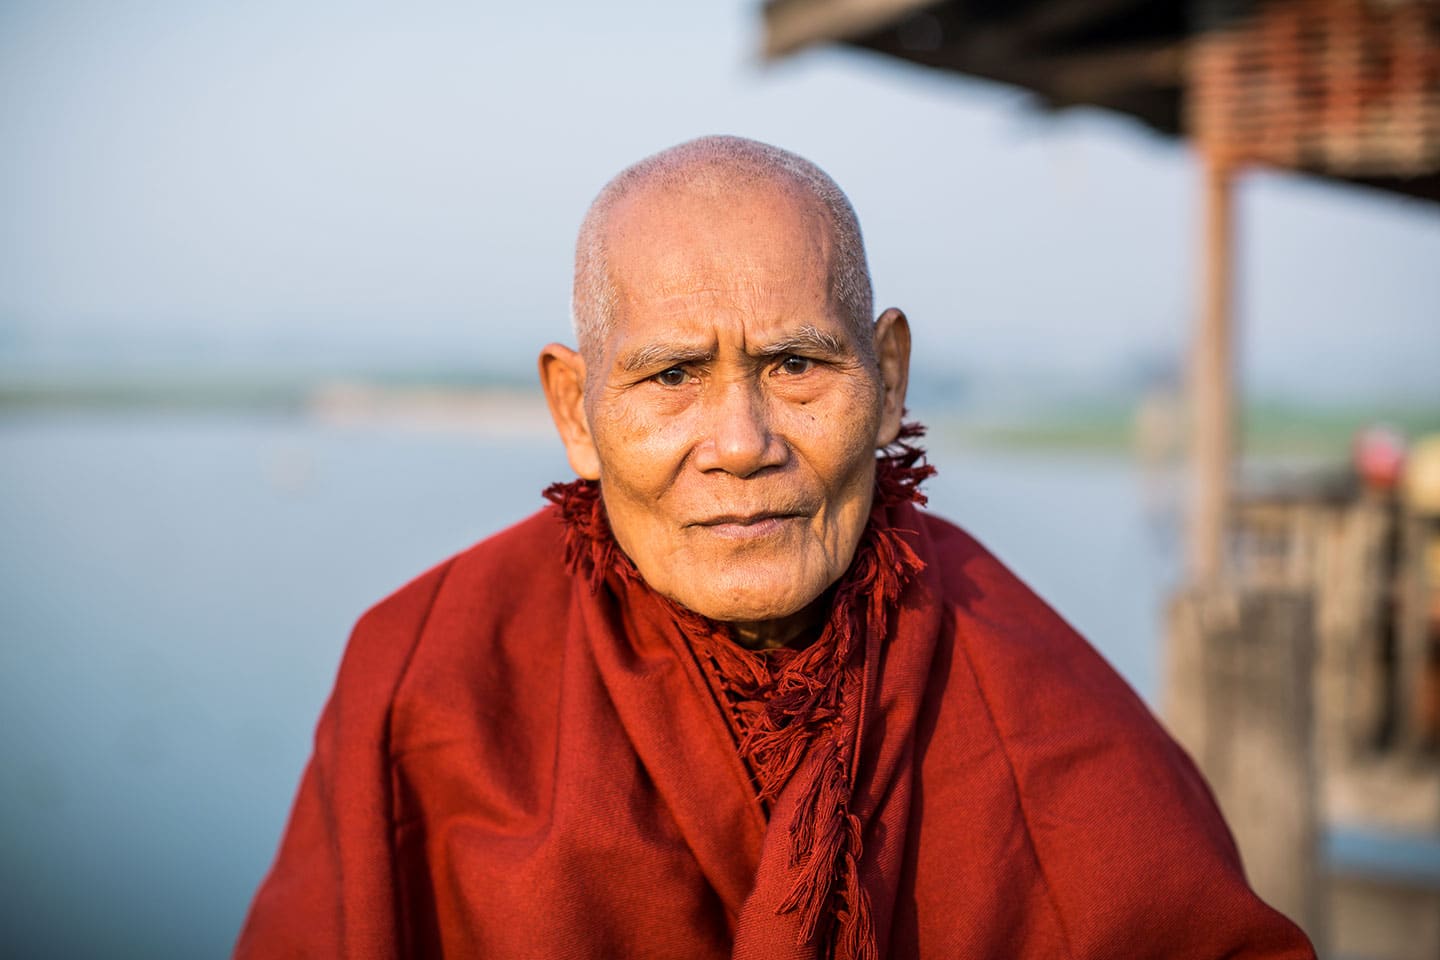 Old monk at the U Bein Bridge in Mandalay, Myanmar